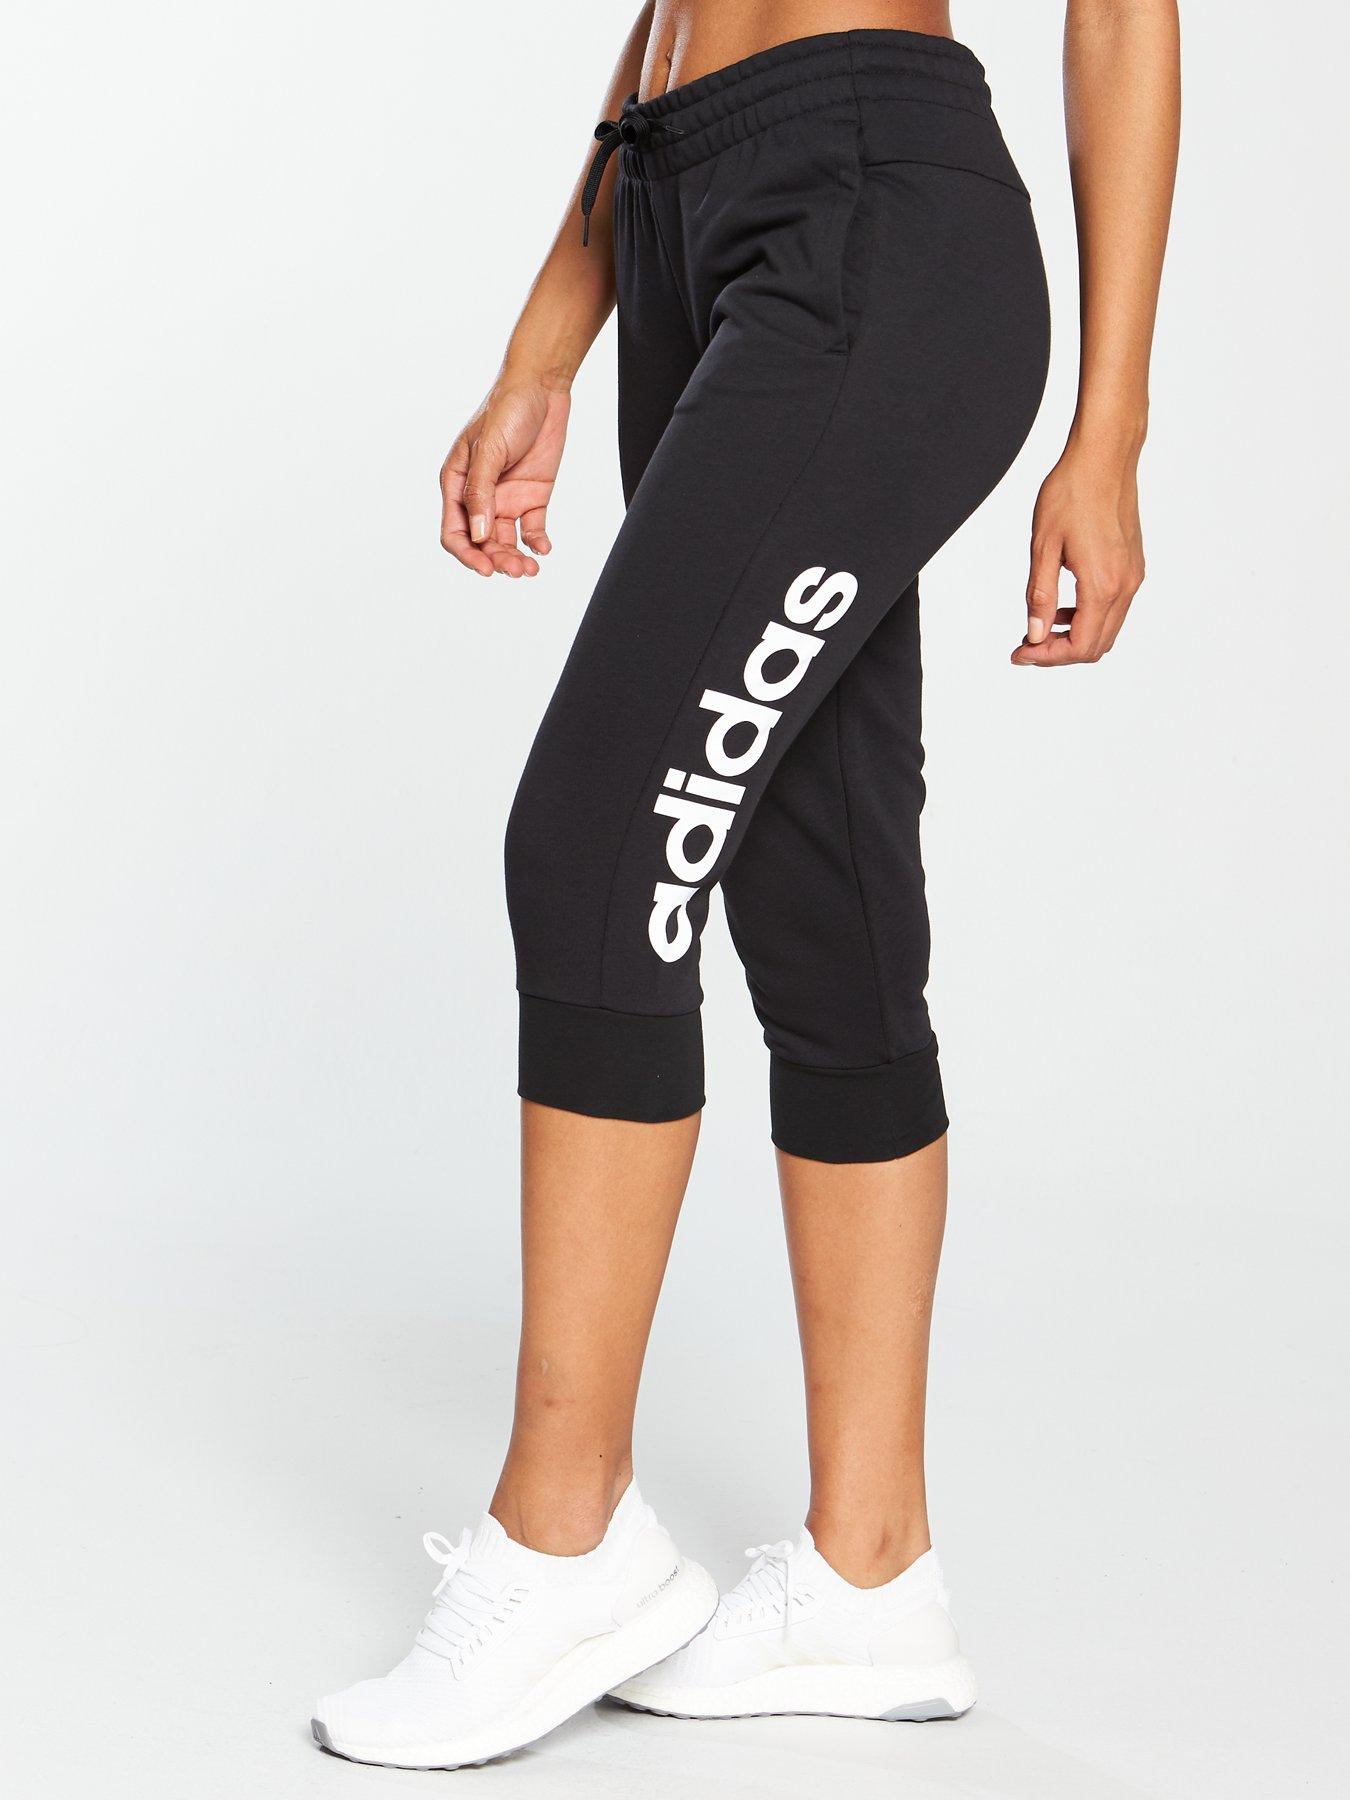 adidas jogging pants womens